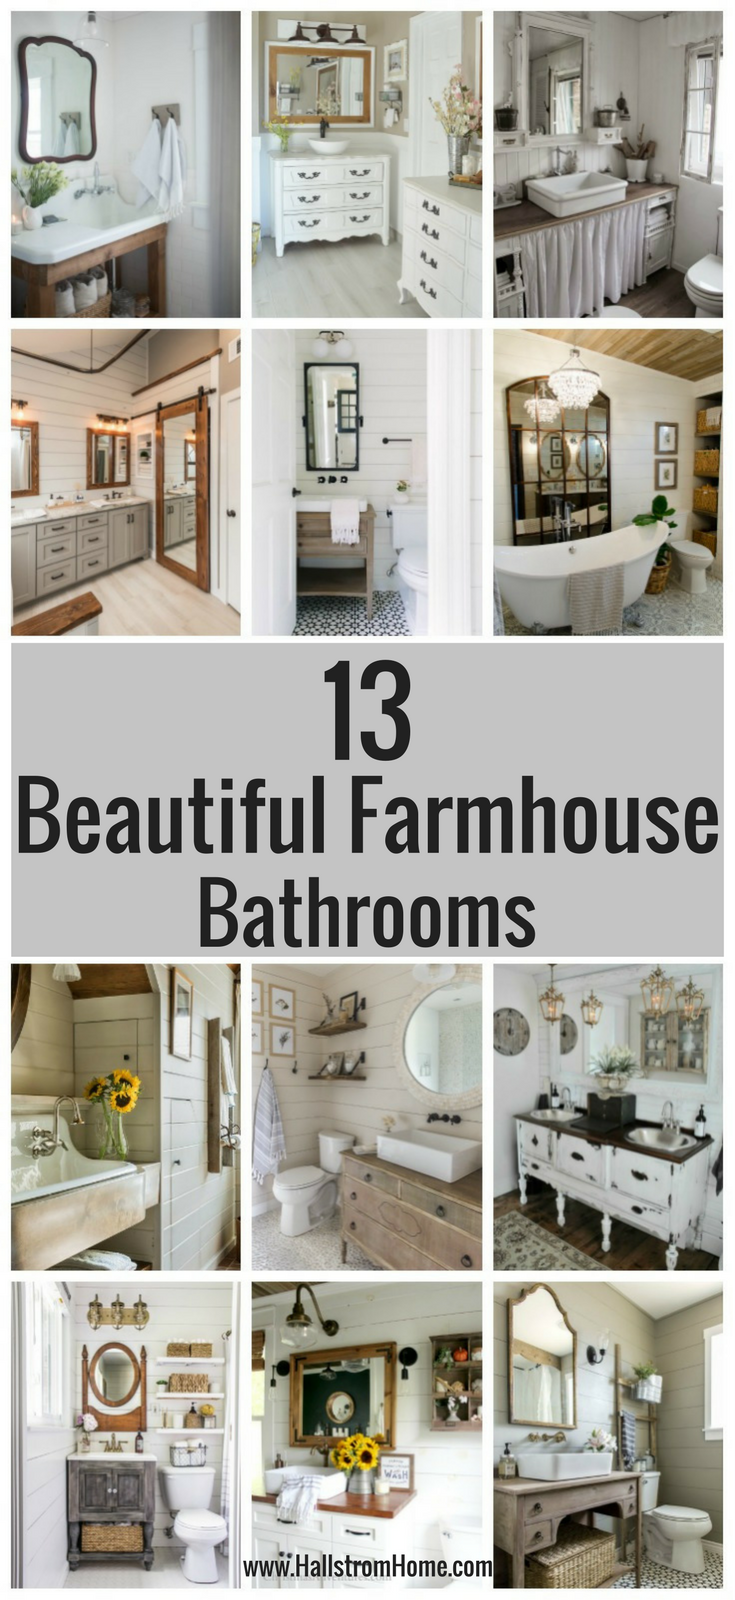 13 Beautiful Farmhouse Bathrooms|farmhouse bathroom|farmhouse bathroom shower curtain|farmhouse bathroom decorating ideas|farmhouse bathroom vanity|bathroom vanity|farmhouse decor|shabby chic|hallstromhome